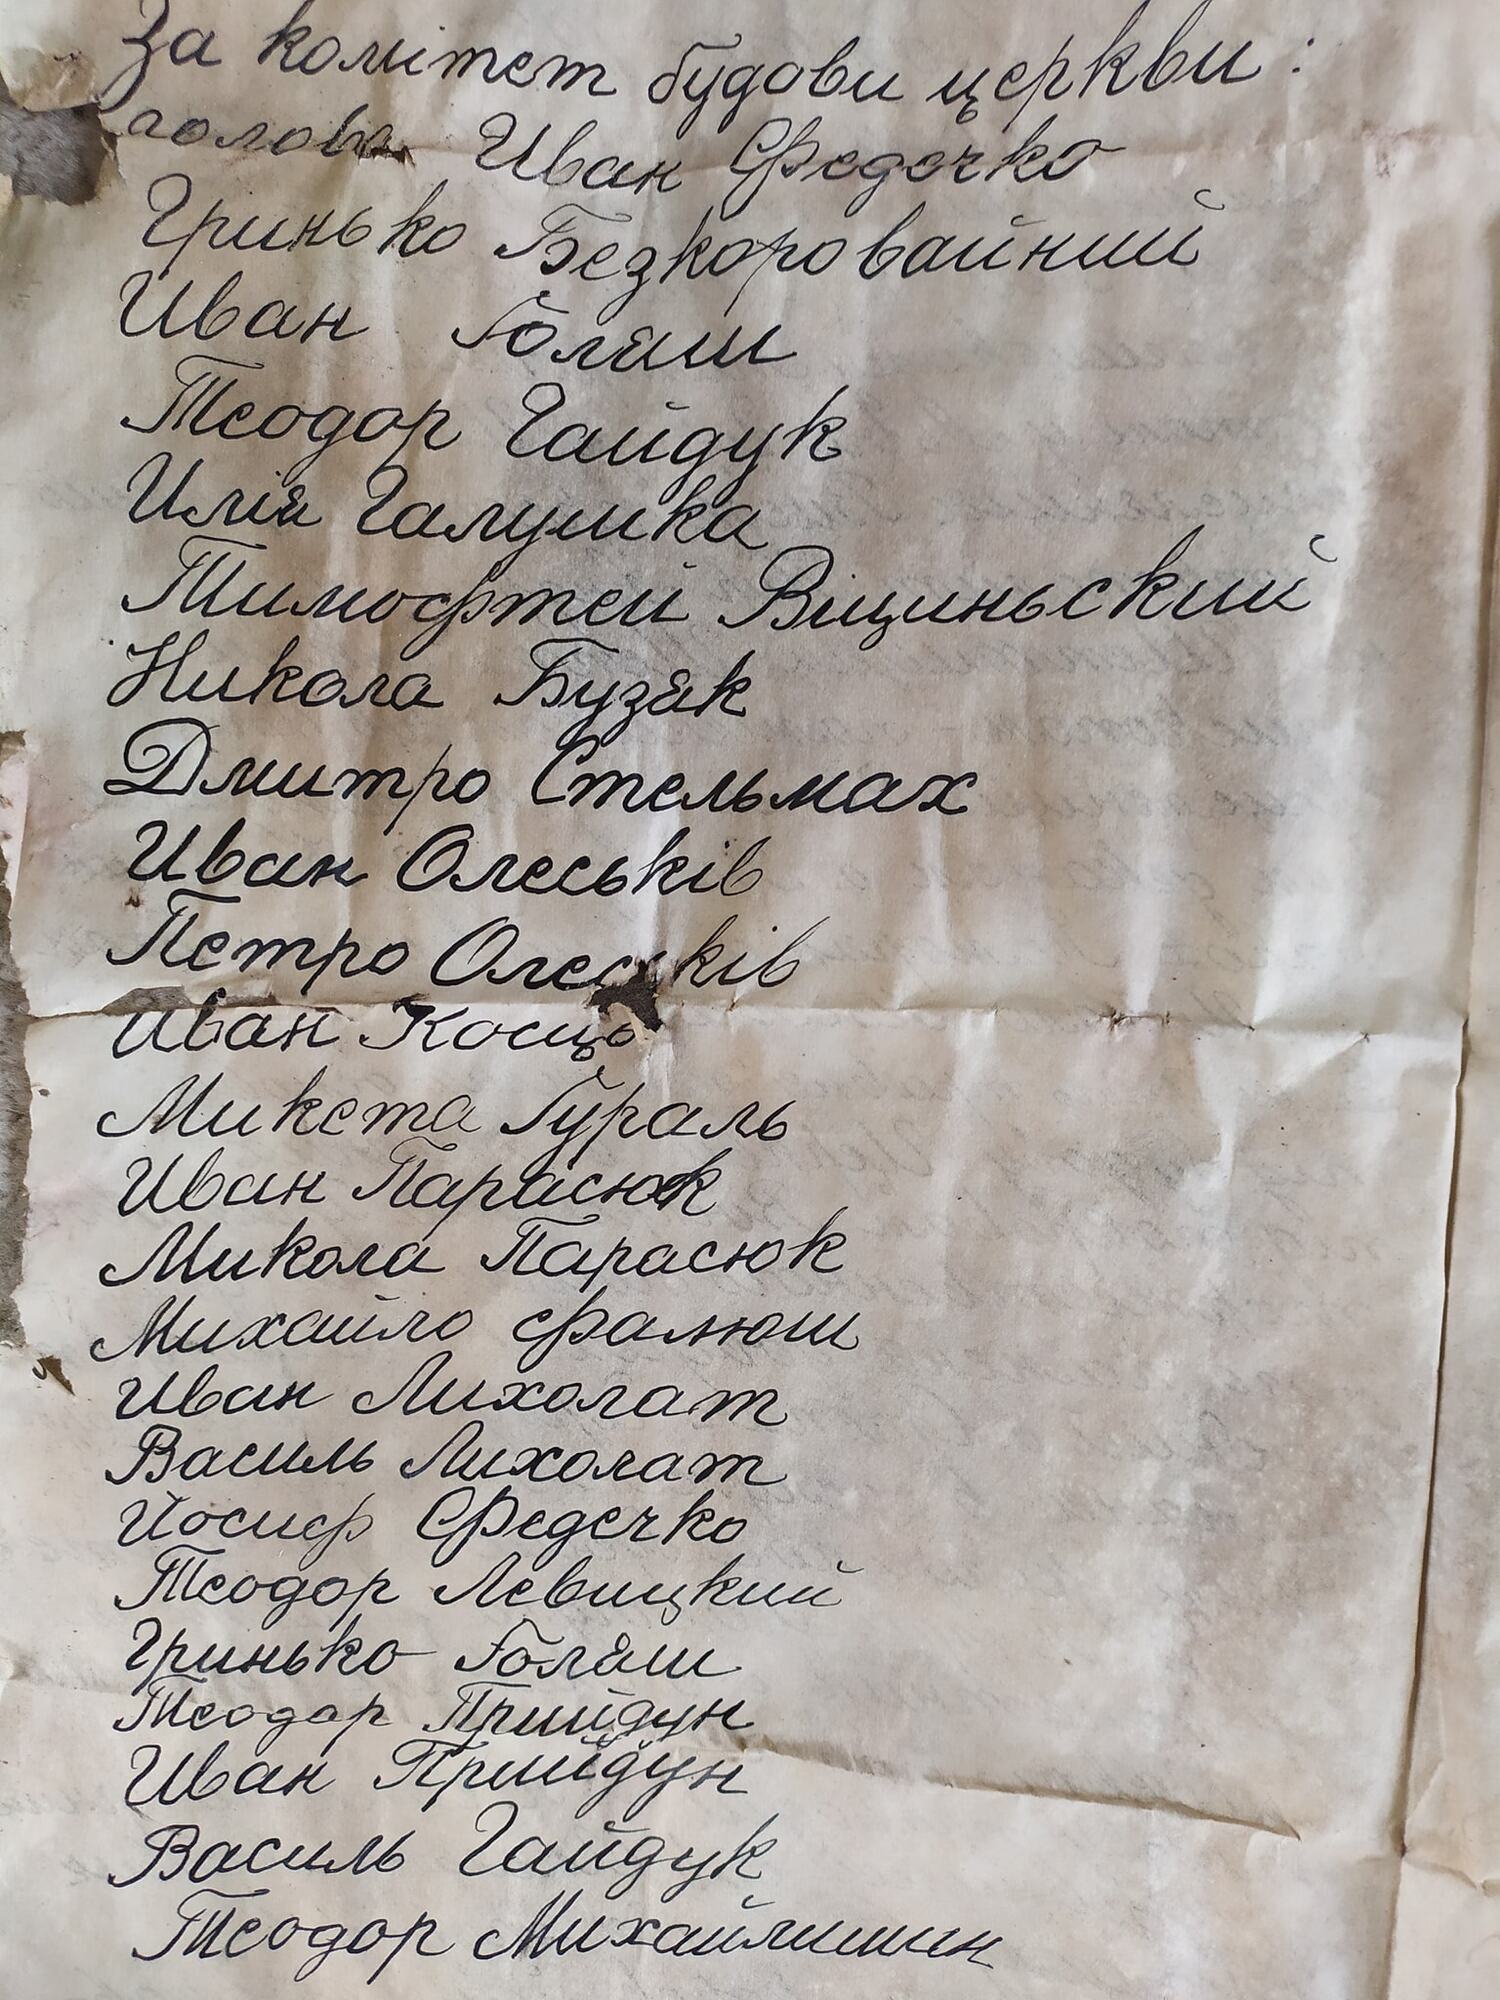 Года Божьего 1937: в украинской церкви во время ремонта обнаружили записку из прошлого. Фото